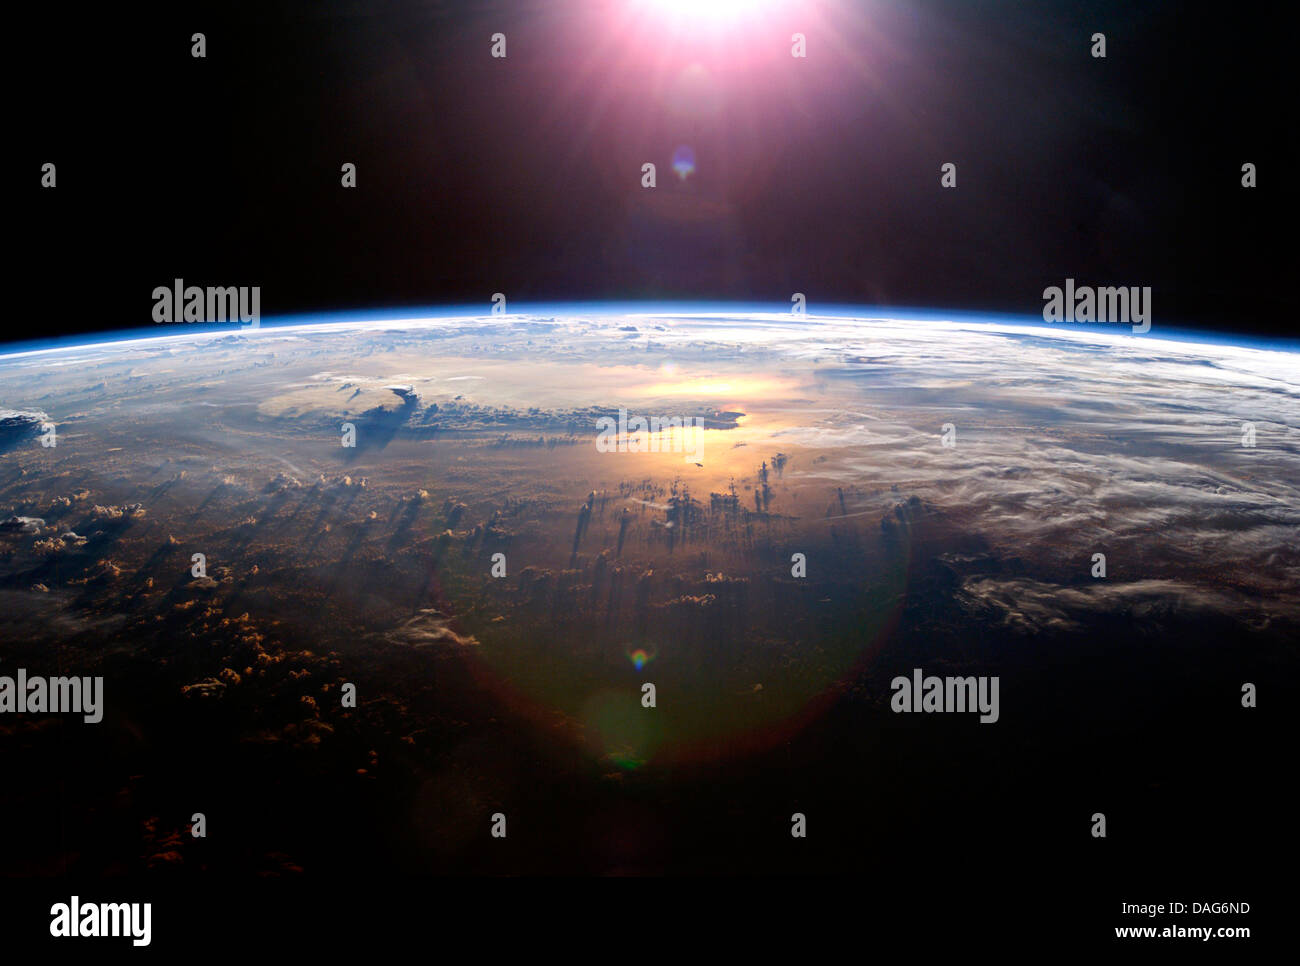 Blick auf die Erde in der Sonne von der internationalen Raumstation ISS. Optimierte und erweiterte Version der ein Originalbild der NASA Stockfoto